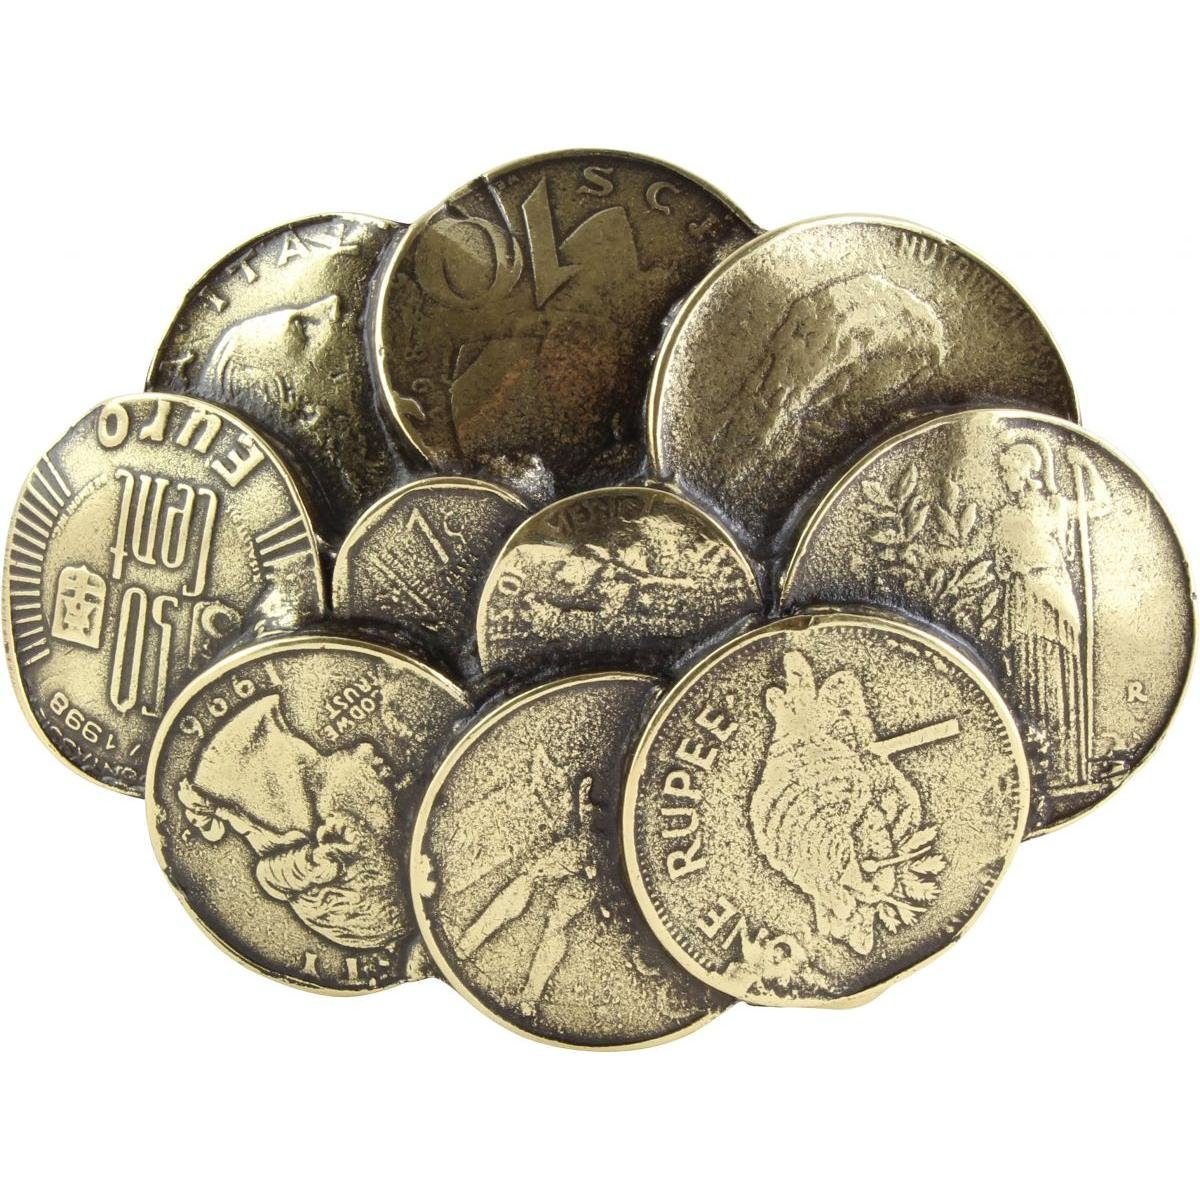 - cm Coins 4,0 Gürtelschließe 40mm bis Gürtelschnalle Wechselschließe BELTINGER - Altmessing Buckle Gürtel